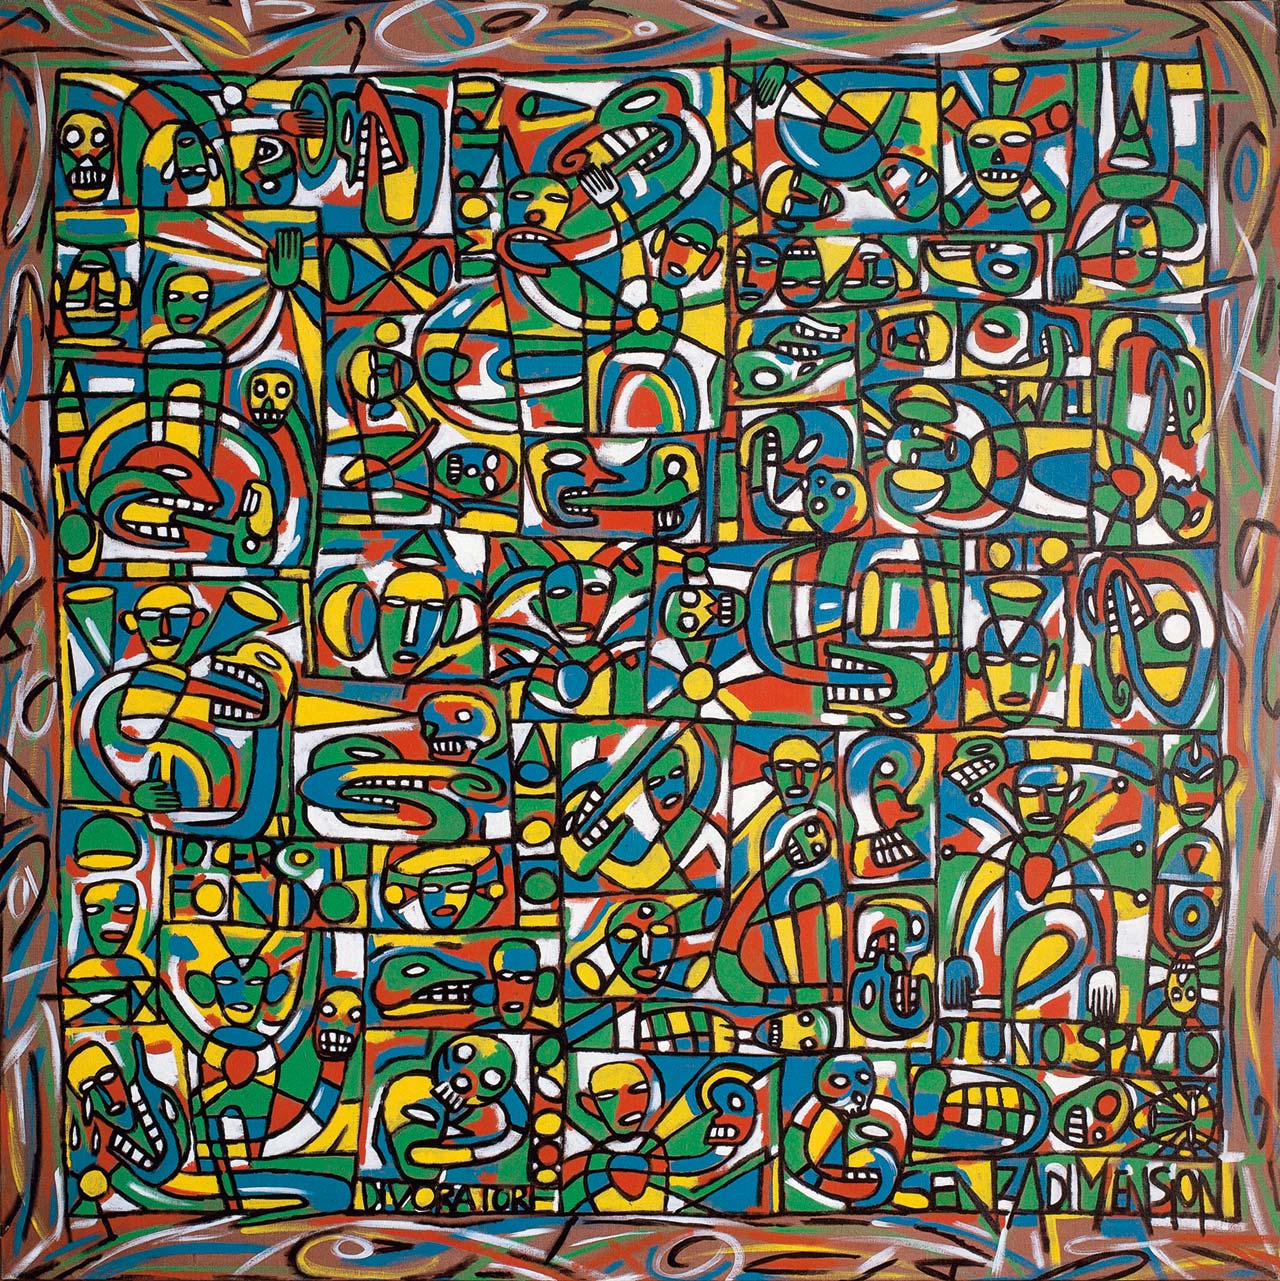 Pablo Echaurren - Senza dimensione, 1991 (Acrilico su tela, 130 x 130 cm)